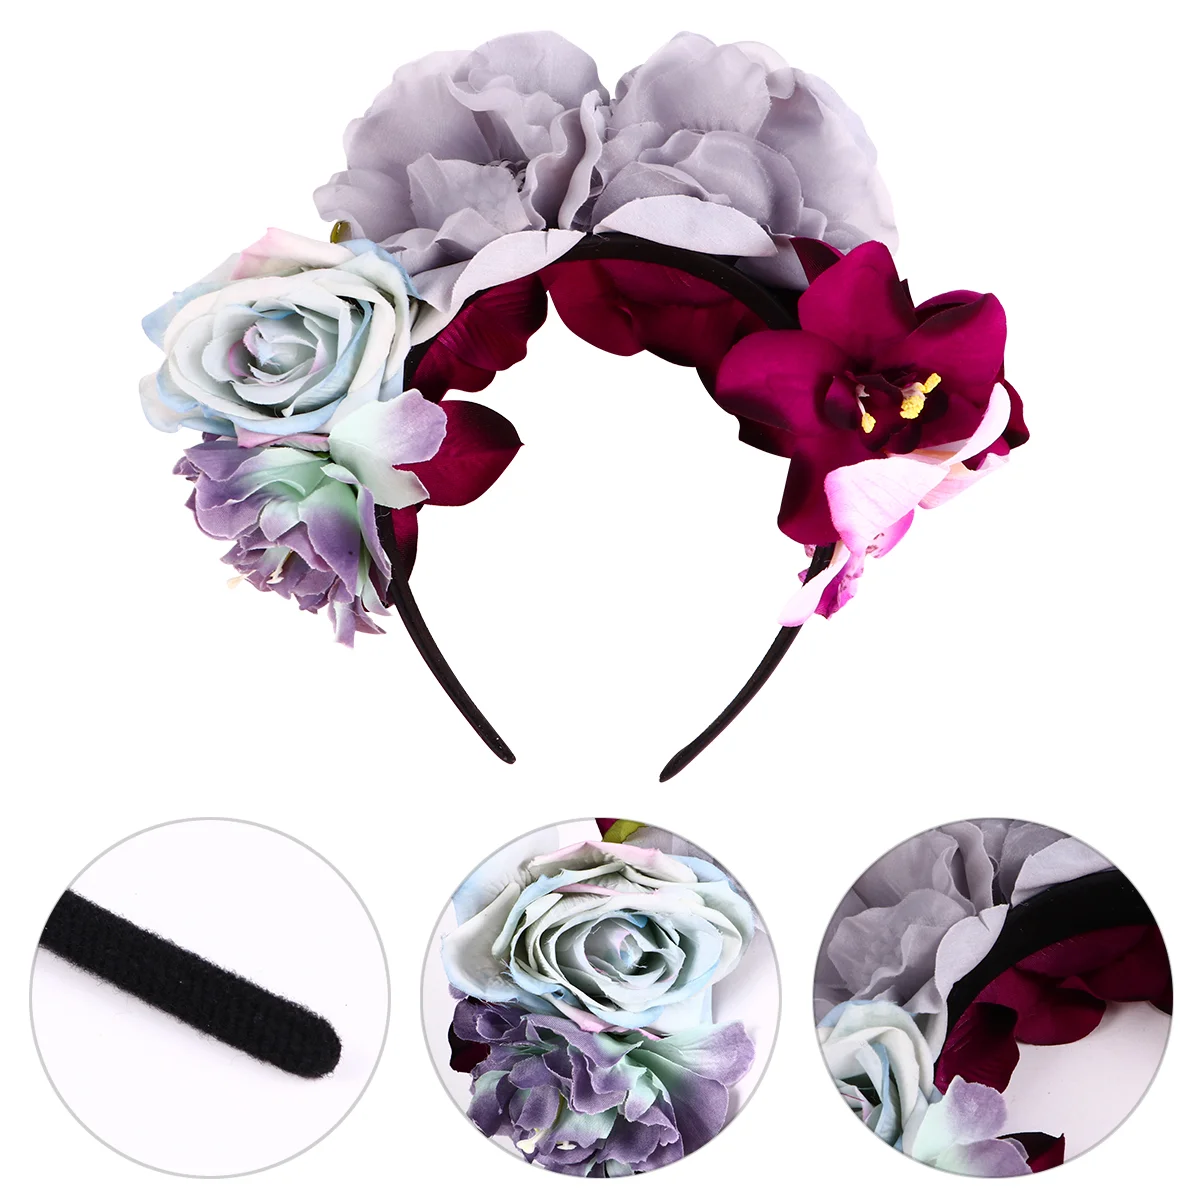 

Цветочный ободок с розами Boho гирлянда обруч для волос Богемия вечерние обруч для волос головной убор ткань Miss